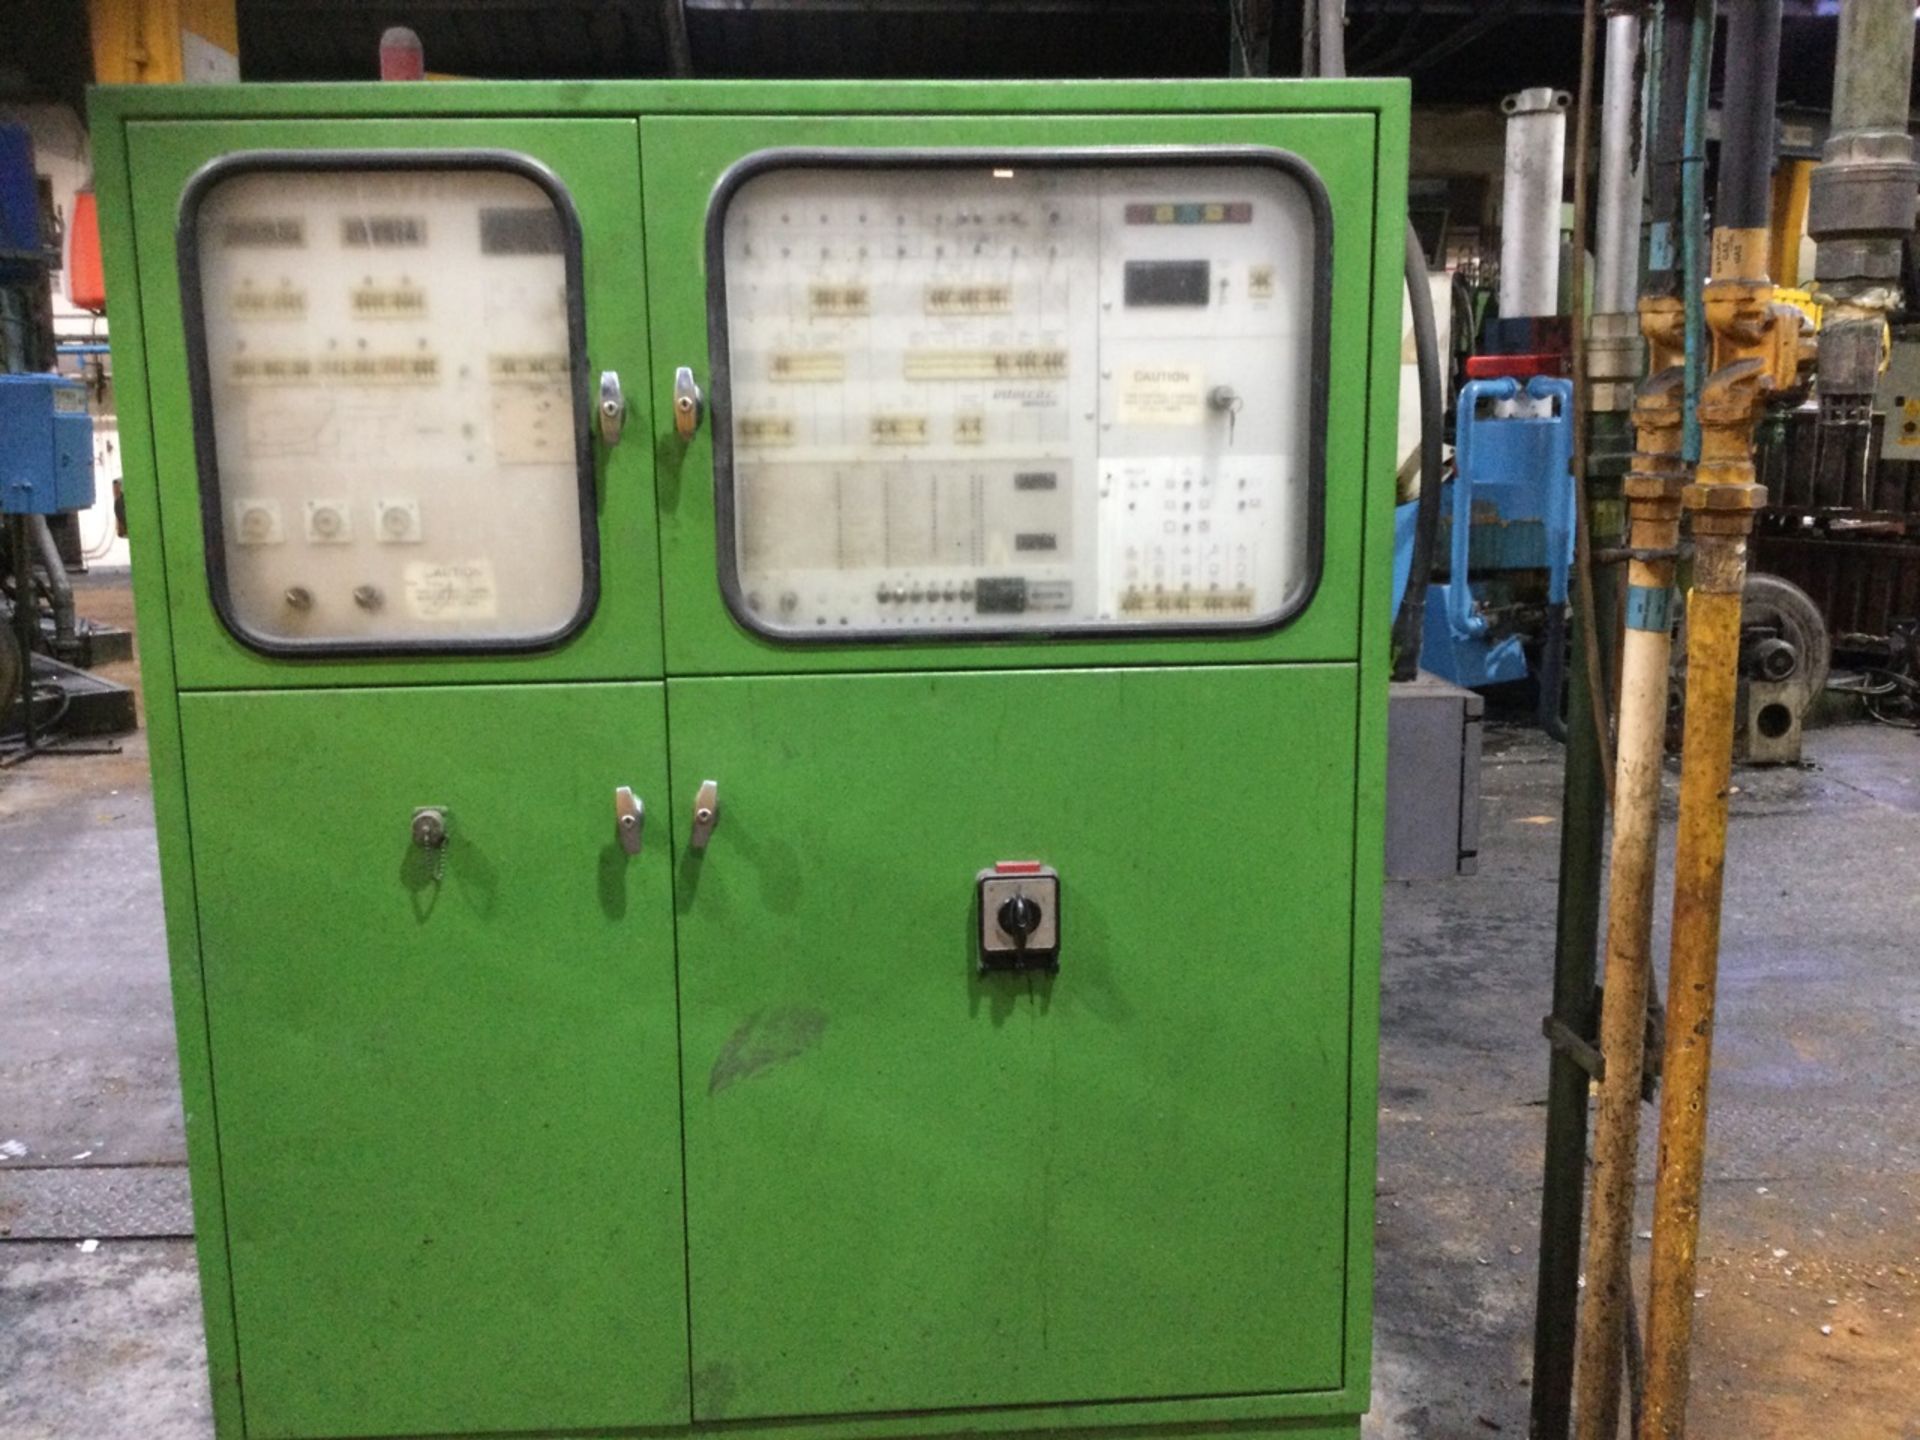 1 Buhler, 250T die-casting machine, Serial Number: - Image 2 of 3